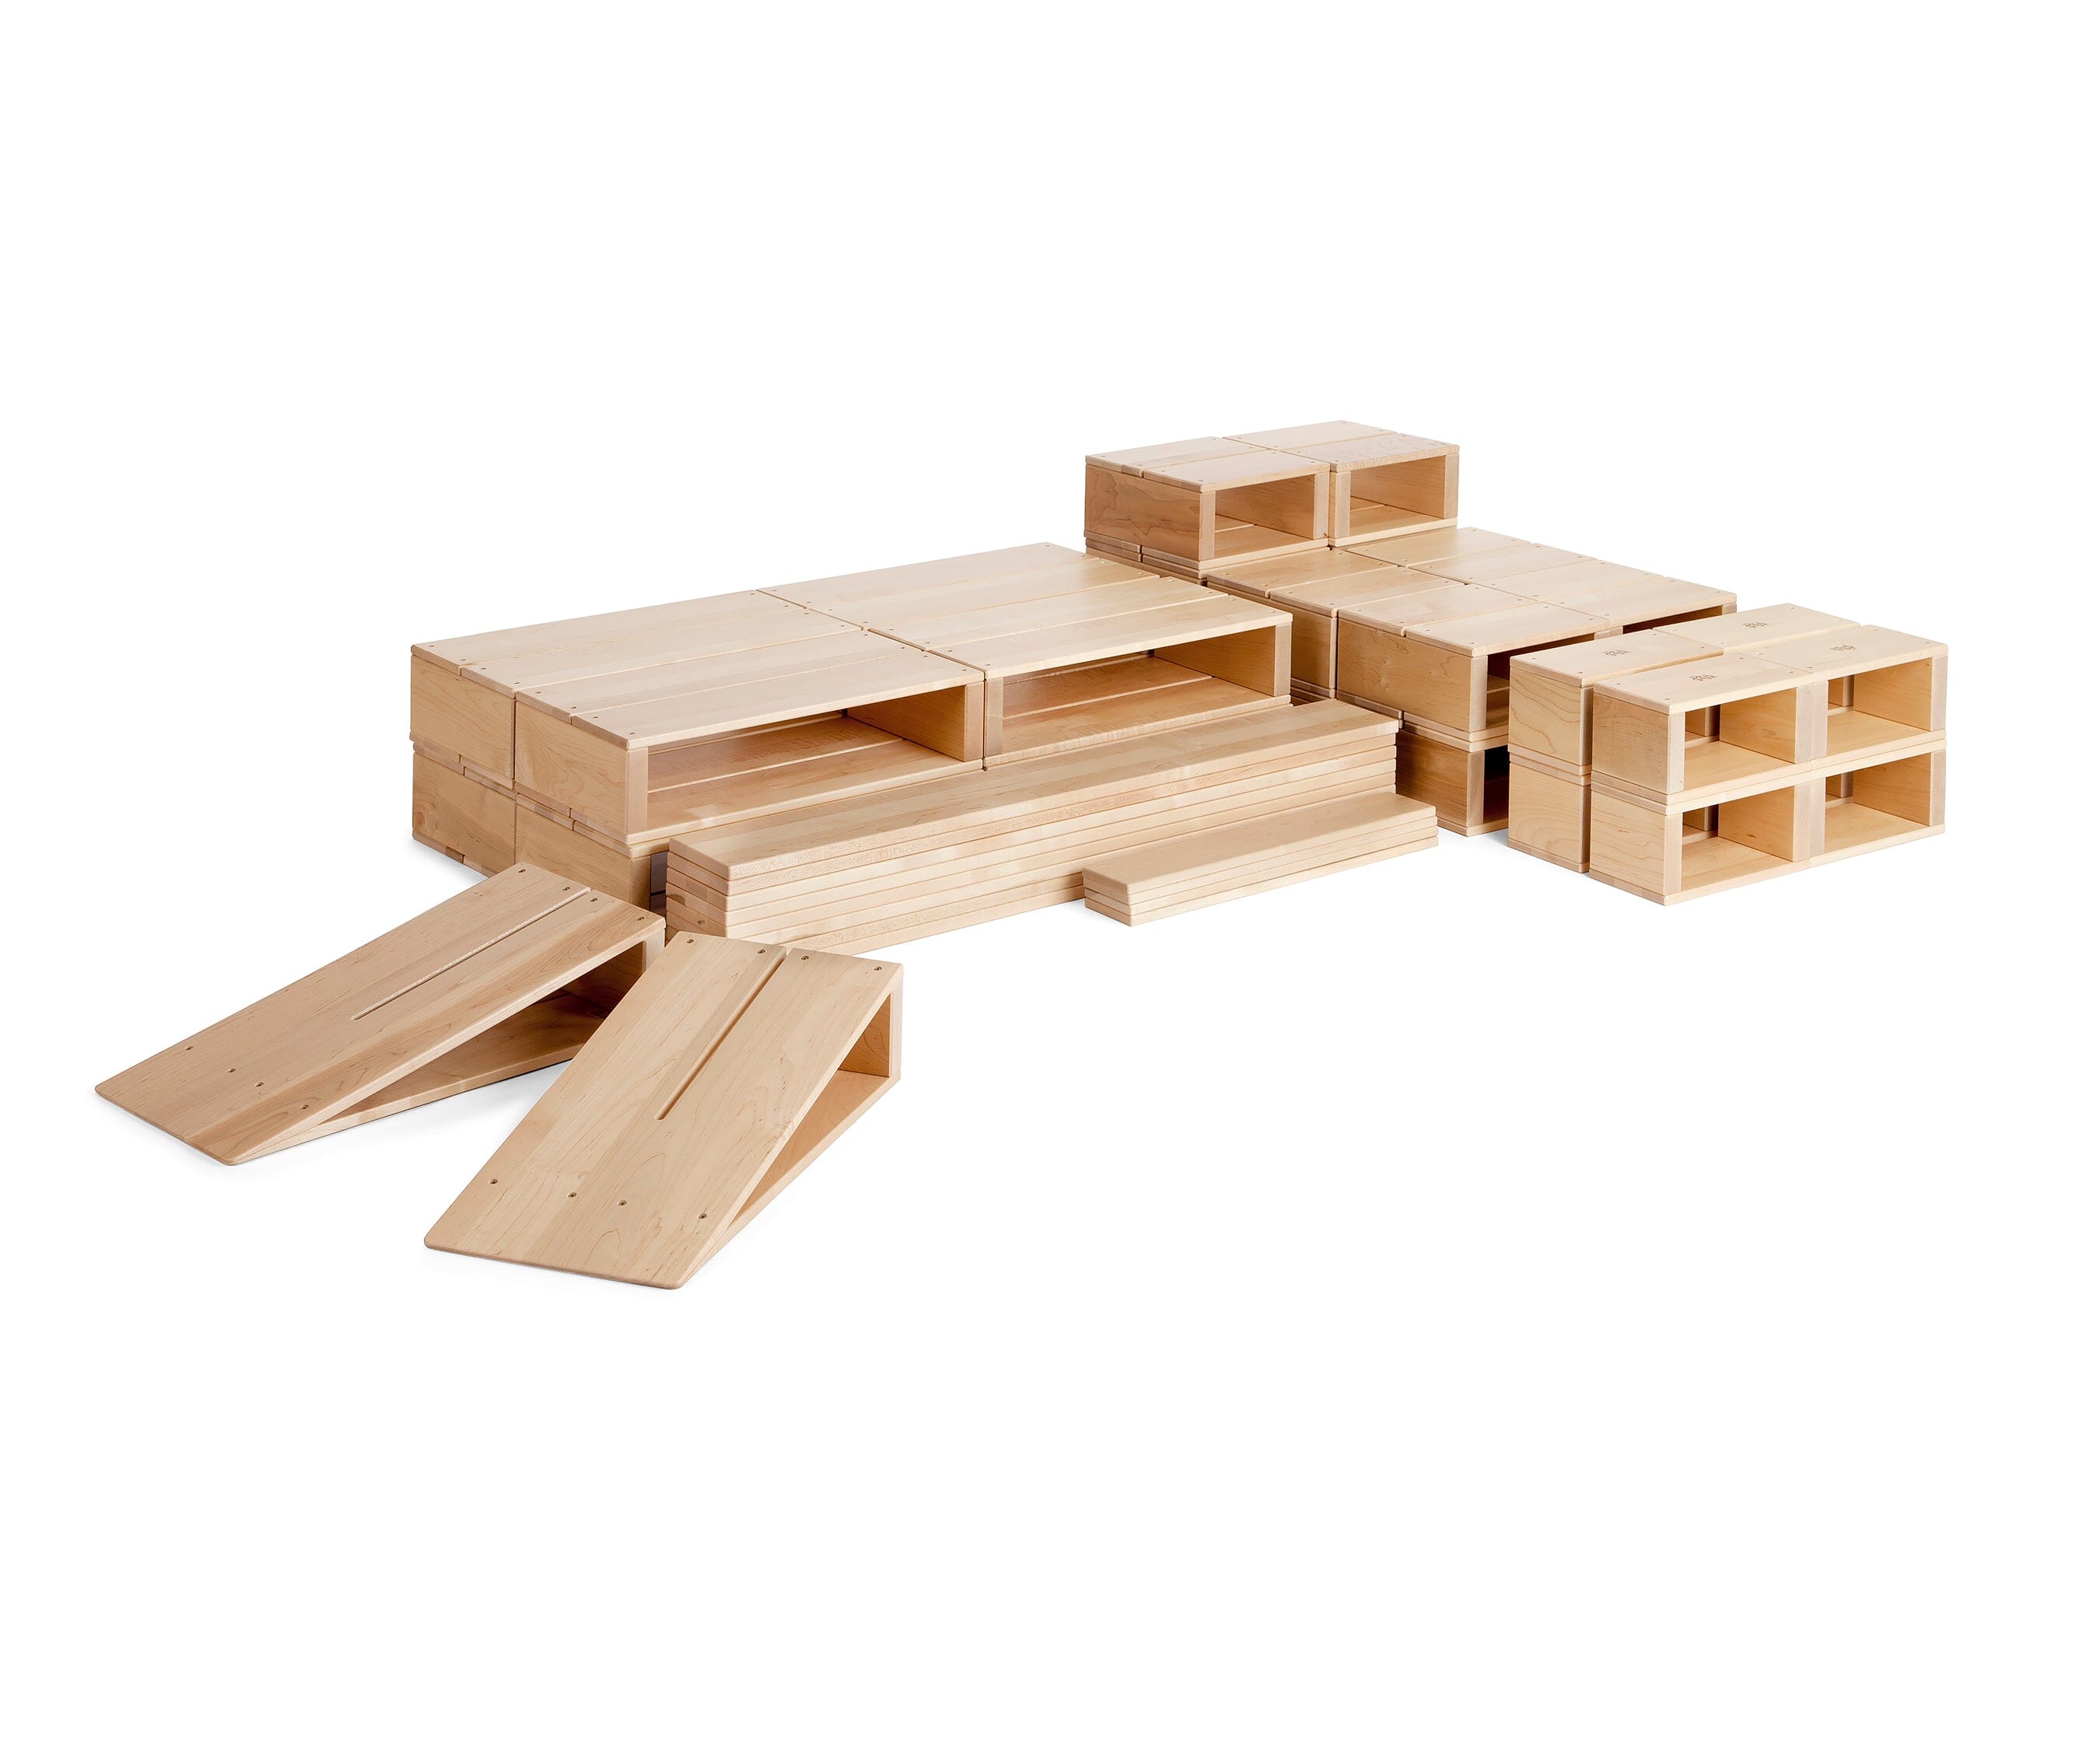 Hollow Blocks by Community Playthings - louisekool